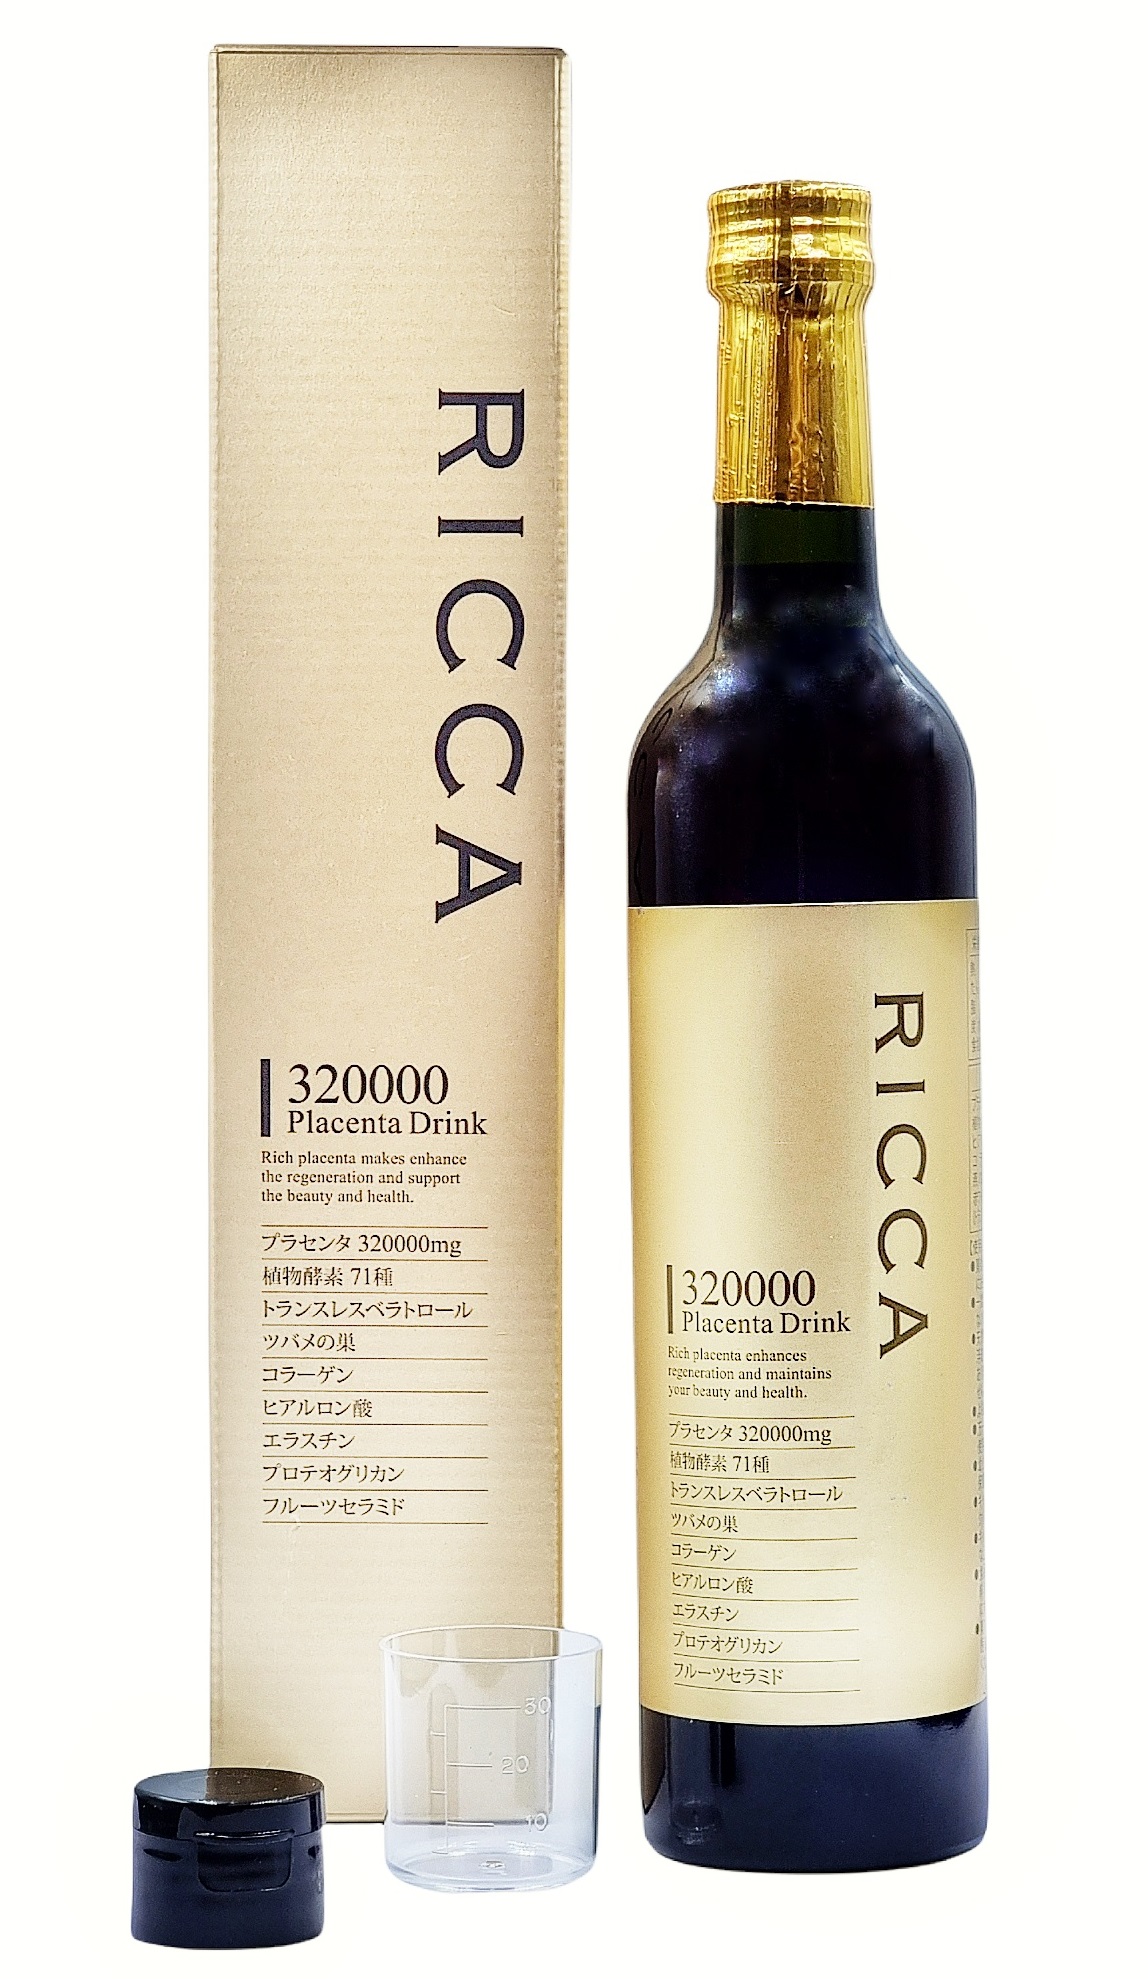 Плацентарный напиток Ricca с высоким содержанием плаценты 320000 мг и экстракта ласточкина гнезда, коллагеном для омоложения организма